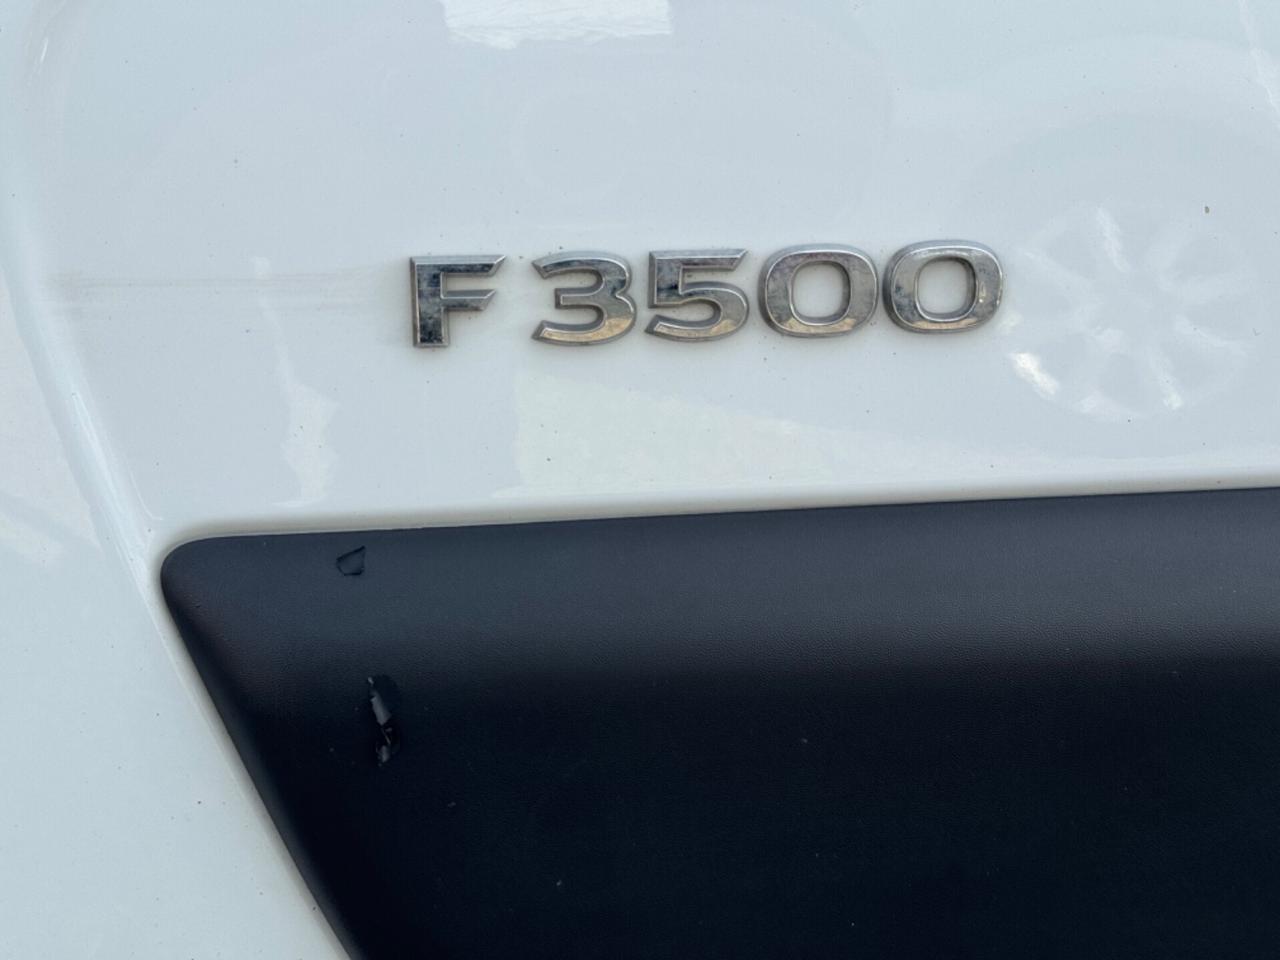 Opel Movano F3500